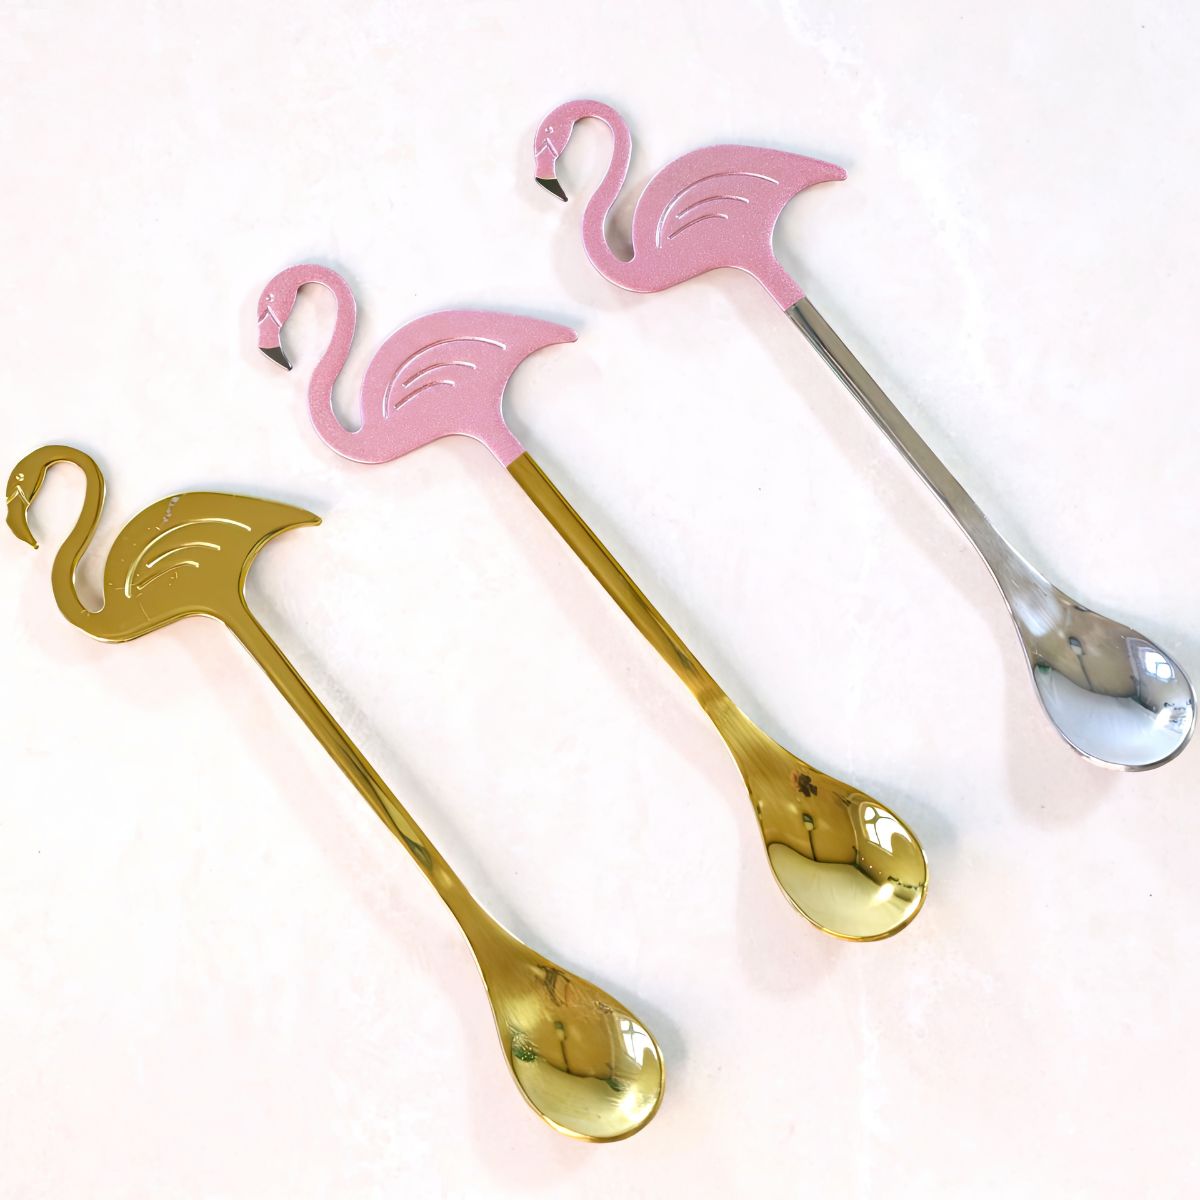 Flamingo Spoons